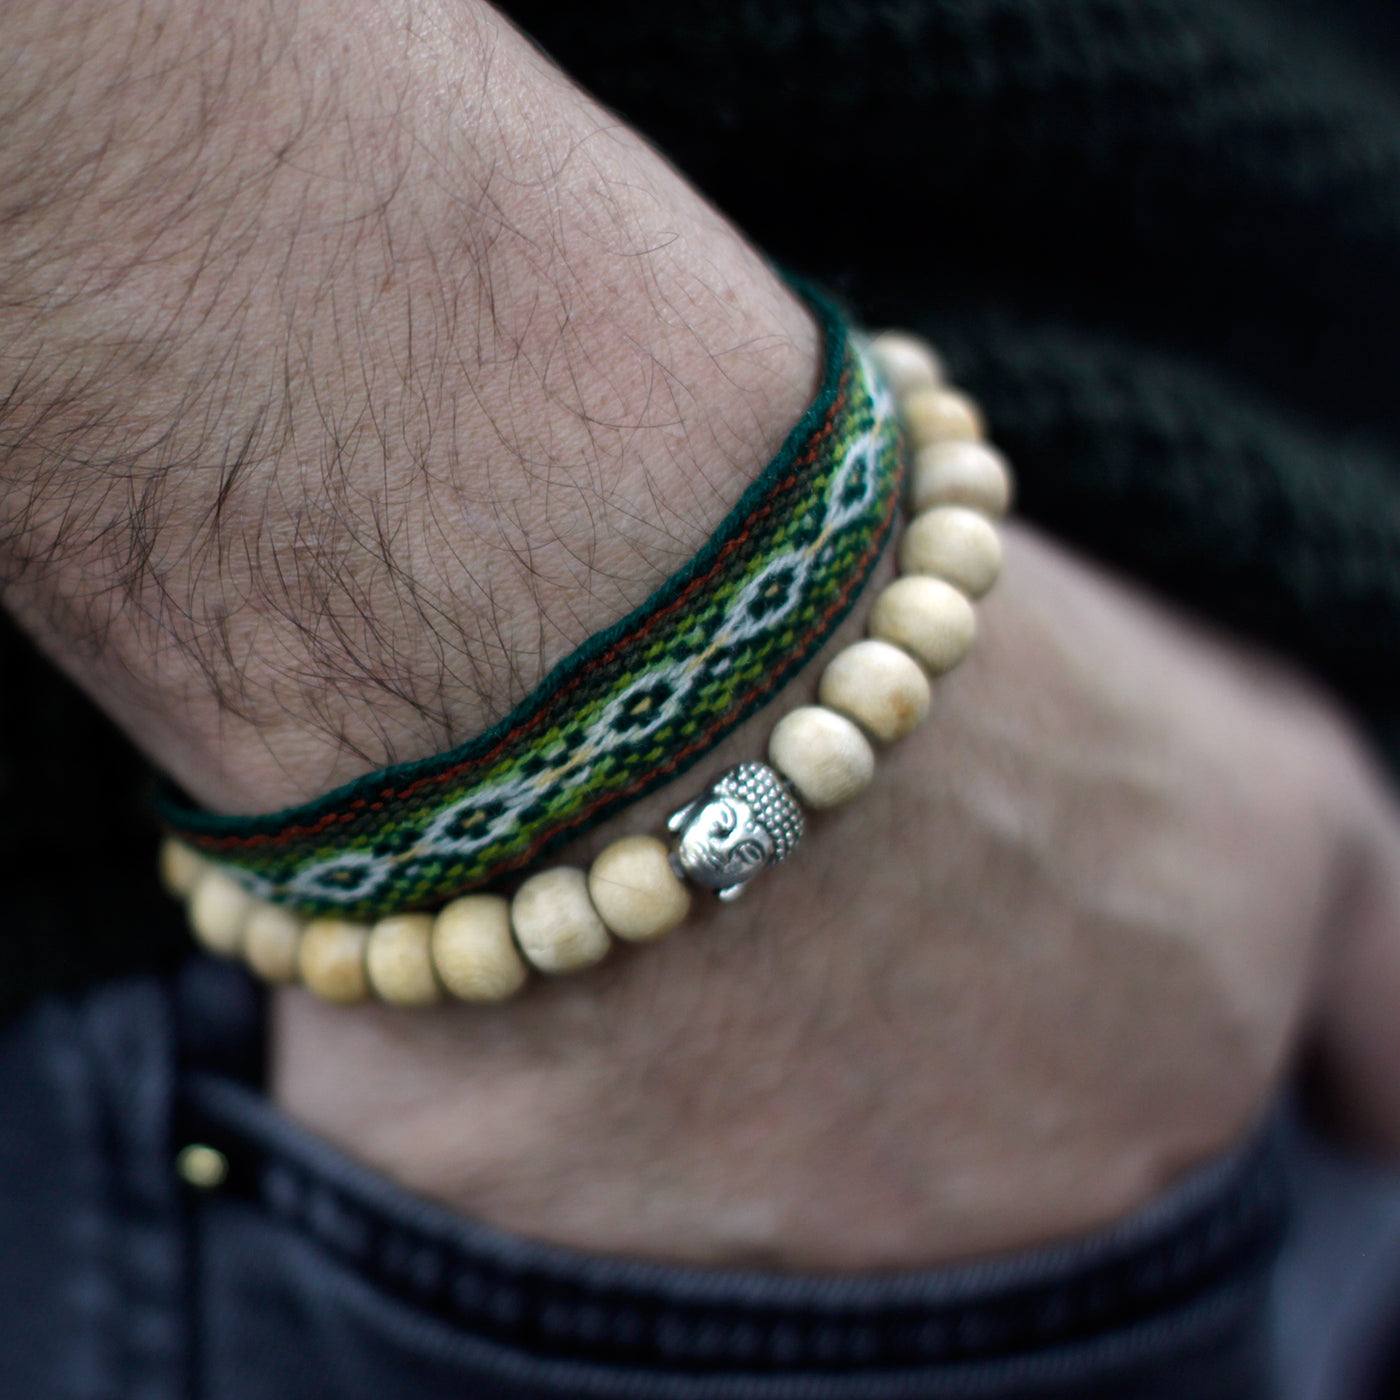 Fragrant Sandalwood Beads & Buddha Unisex Bracelet.